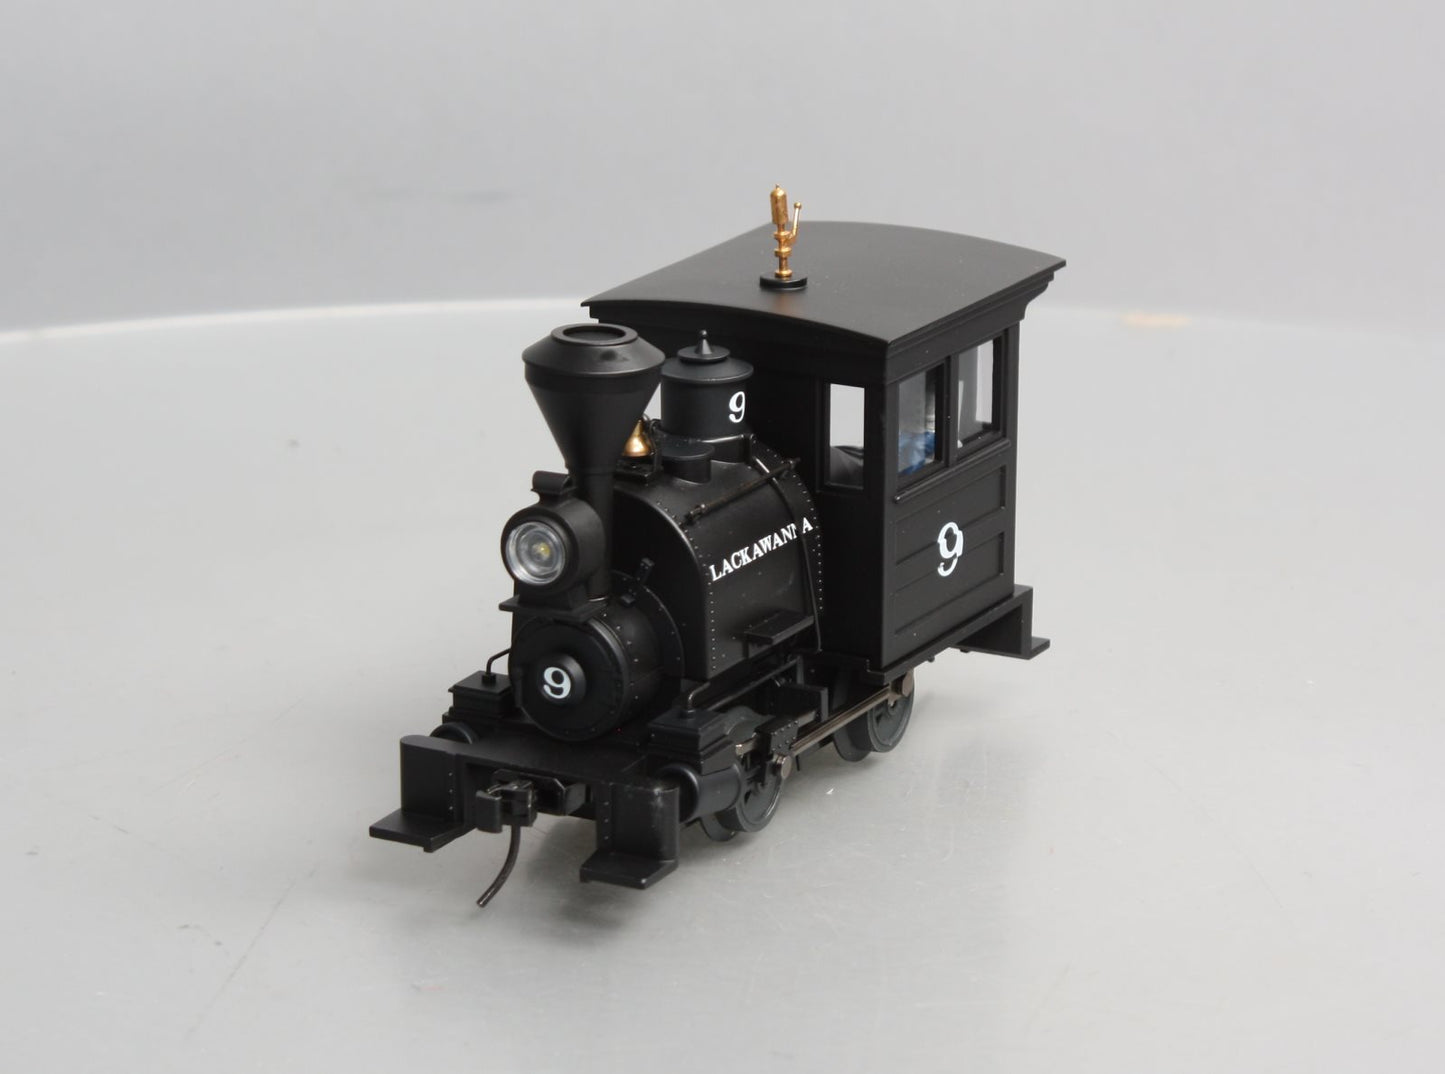 Lionel 6-21319 Lackawanna Die Cast Porter Steam Locomotive #9